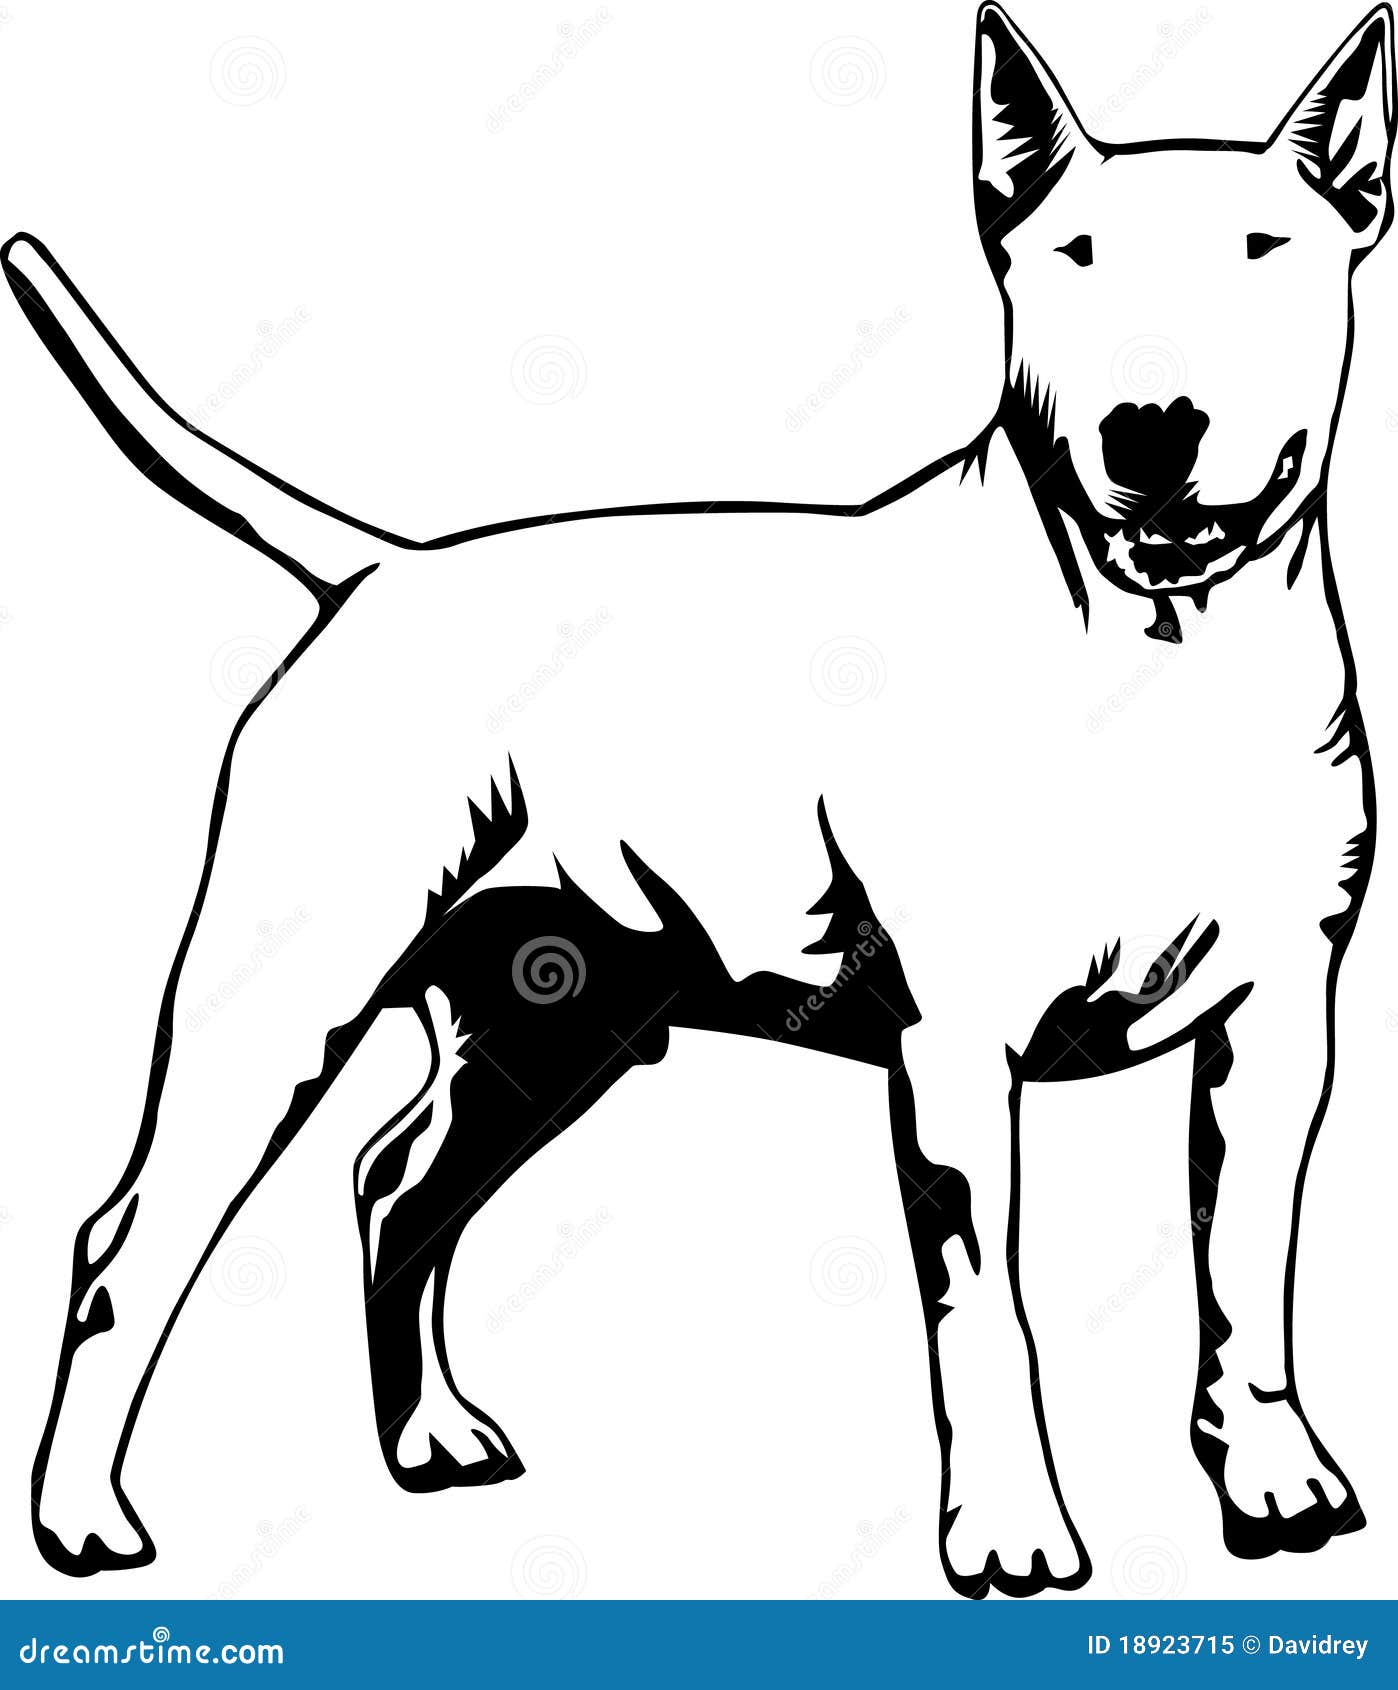 Standing bull terrier stock illustration. Illustration of standing